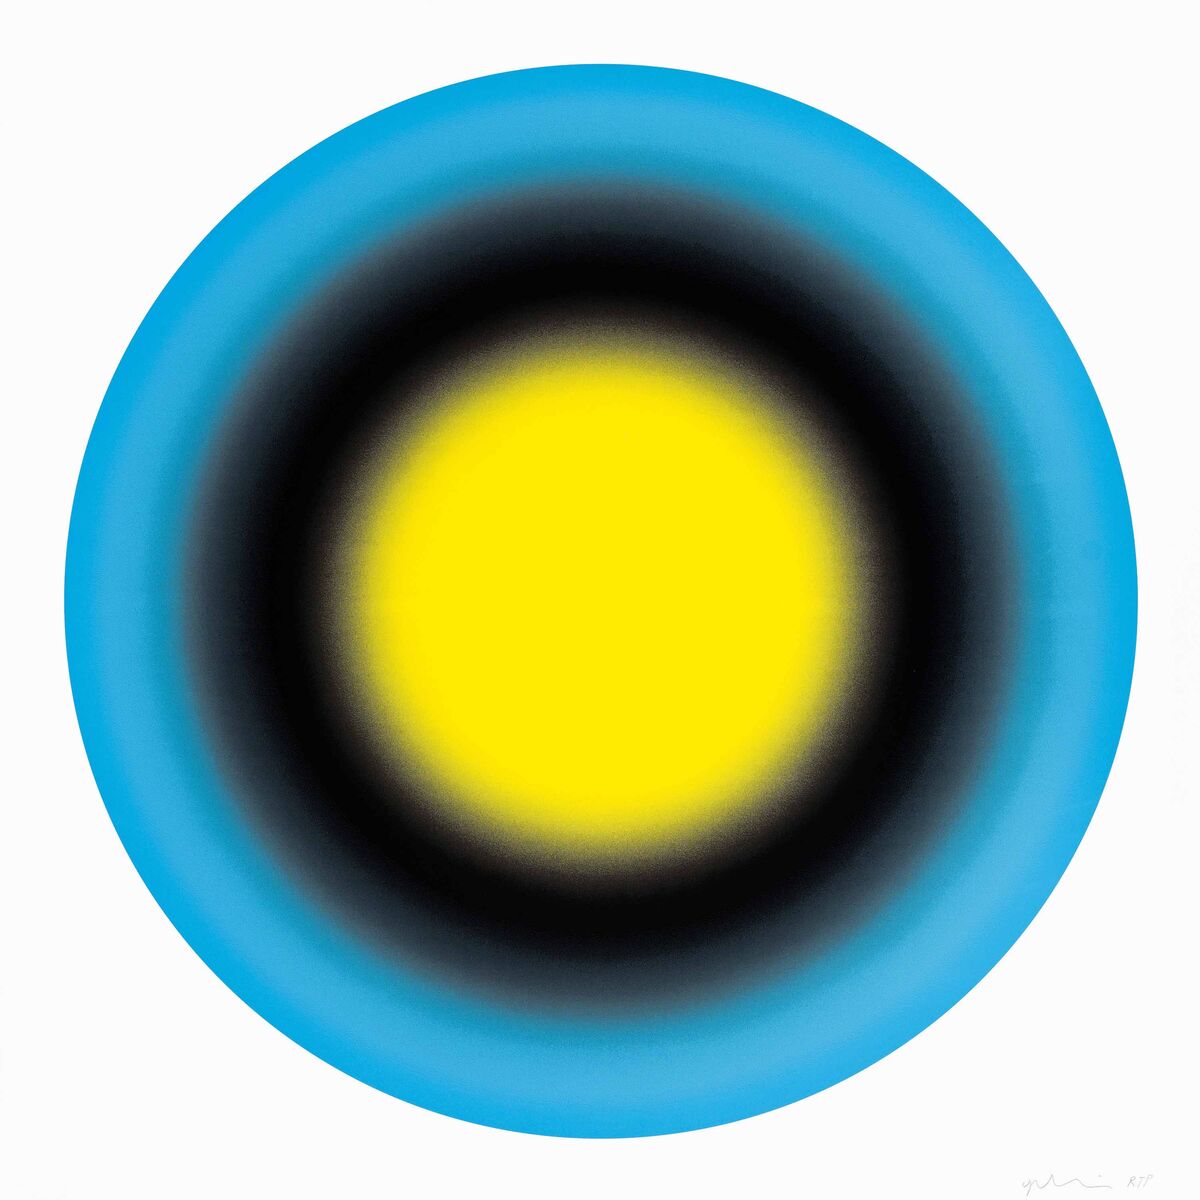 Ugo Rondinone, Small Sun I, 2019, Silkscreen, 36 × 36 in, 91.4 × 91.4 cm. Edition of 50. Adamar Fine Arts.